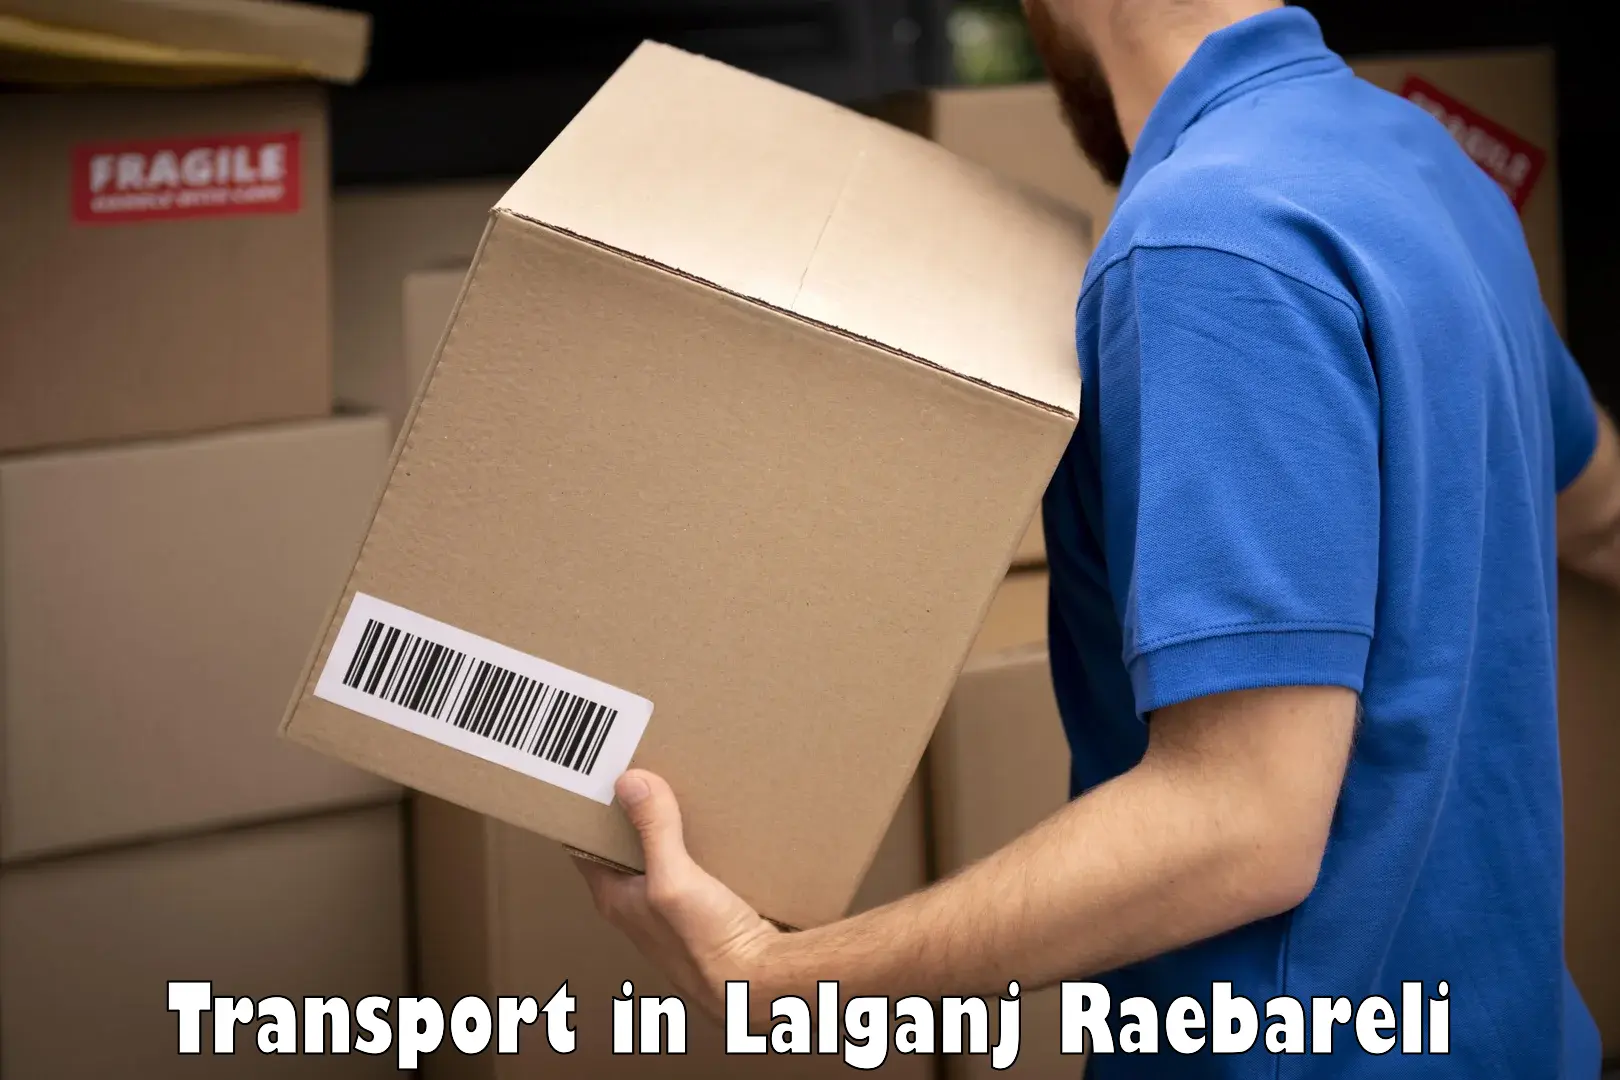 Transport in sharing in Lalganj Raebareli